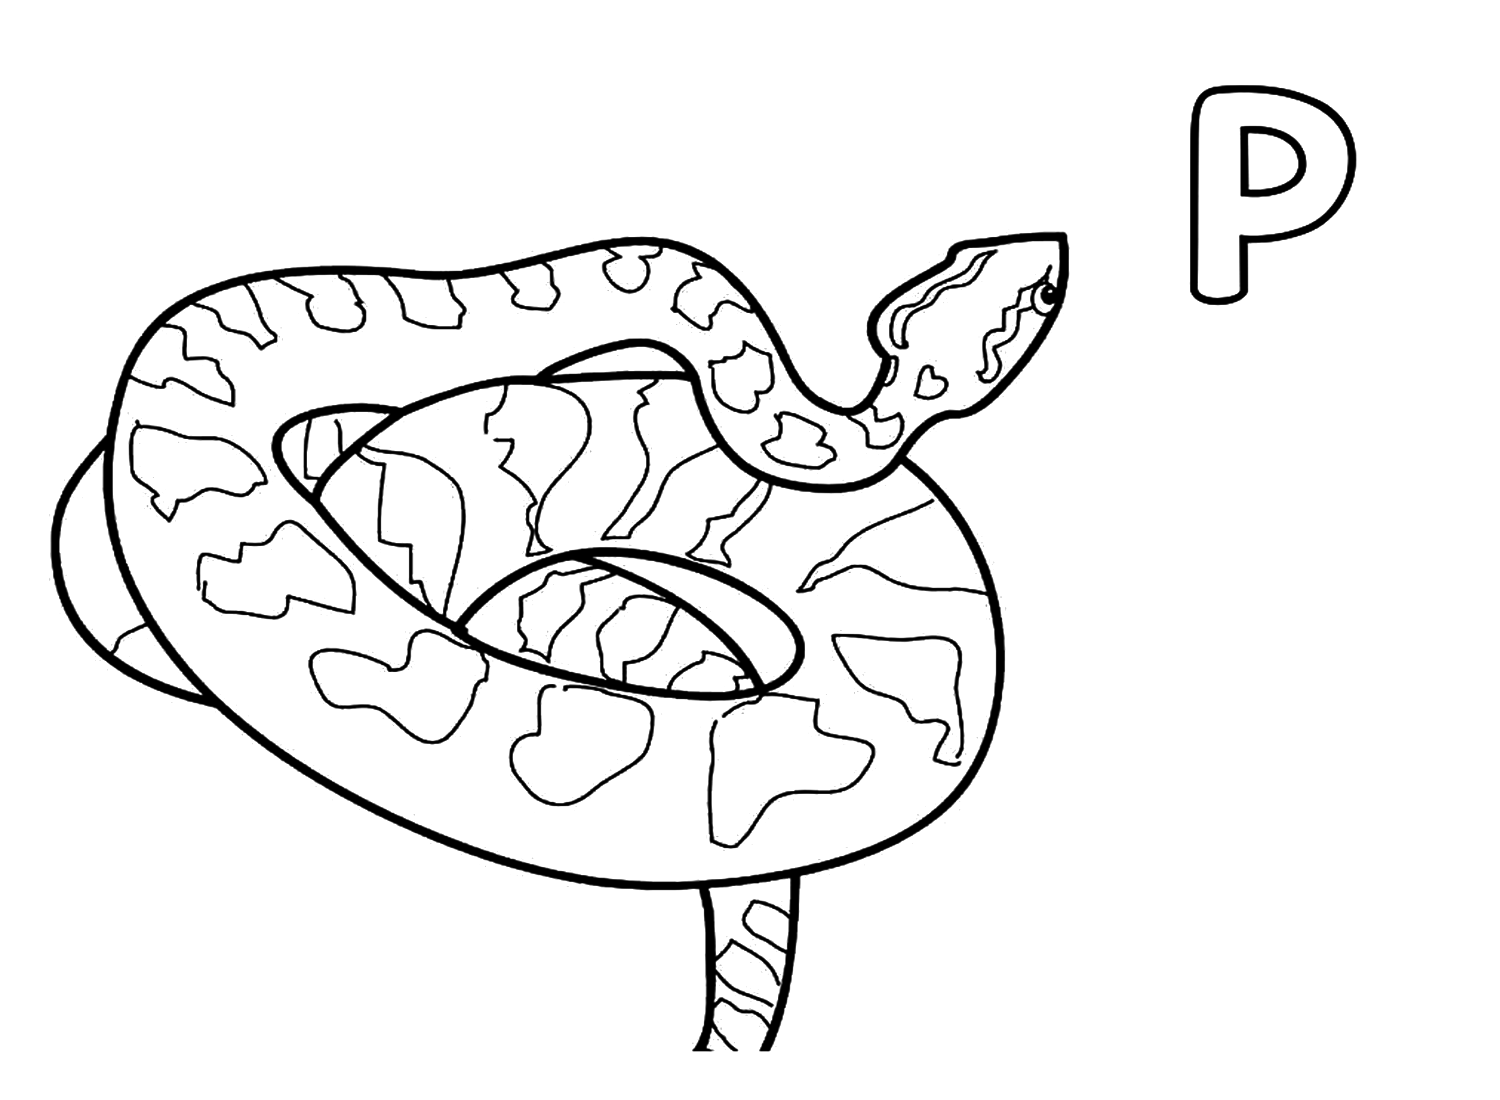 Буква P для страницы раскраски Python от Python